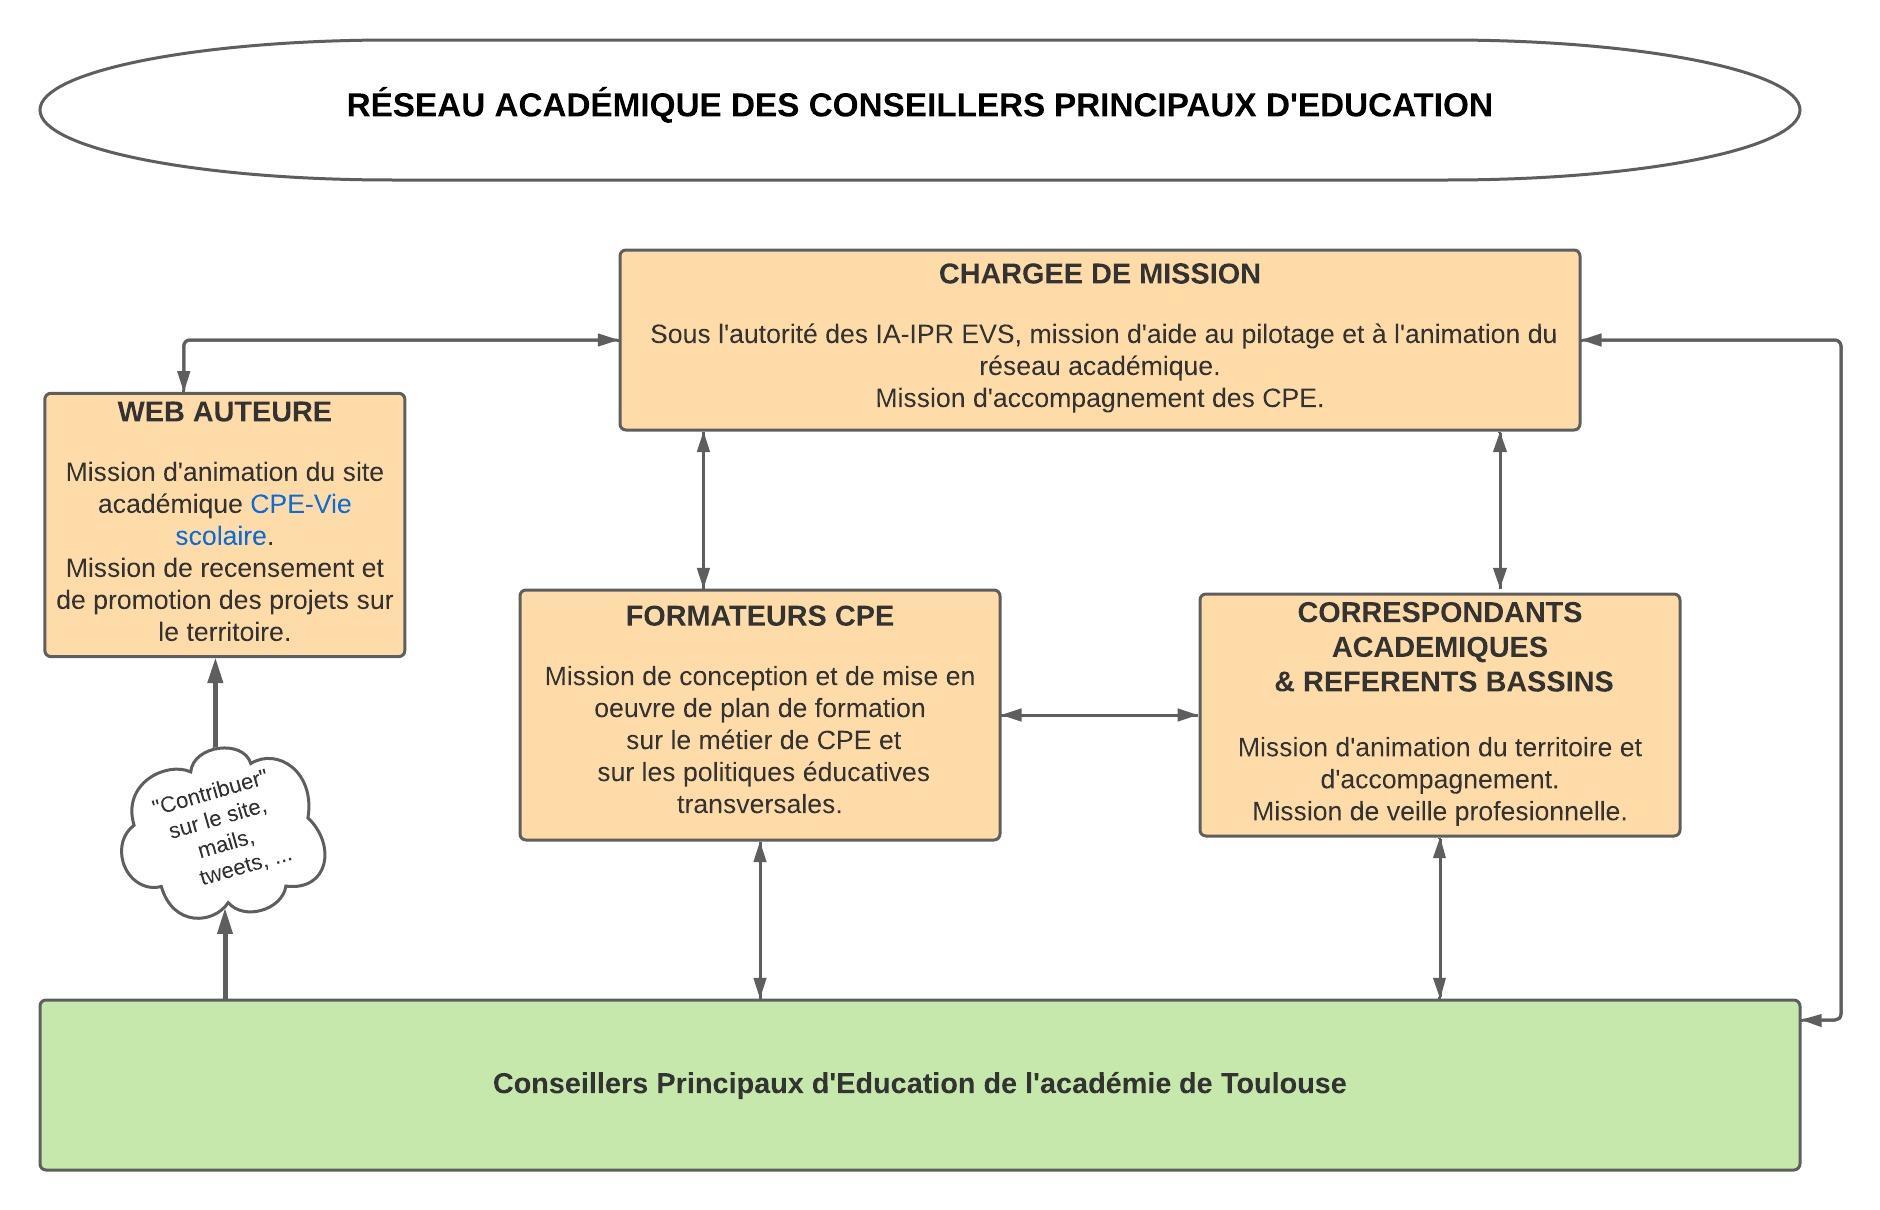 LE RÉSEAU ACADÉMIQUE DES CONSEILLERS PRINCIPAUX D'EDUCATION